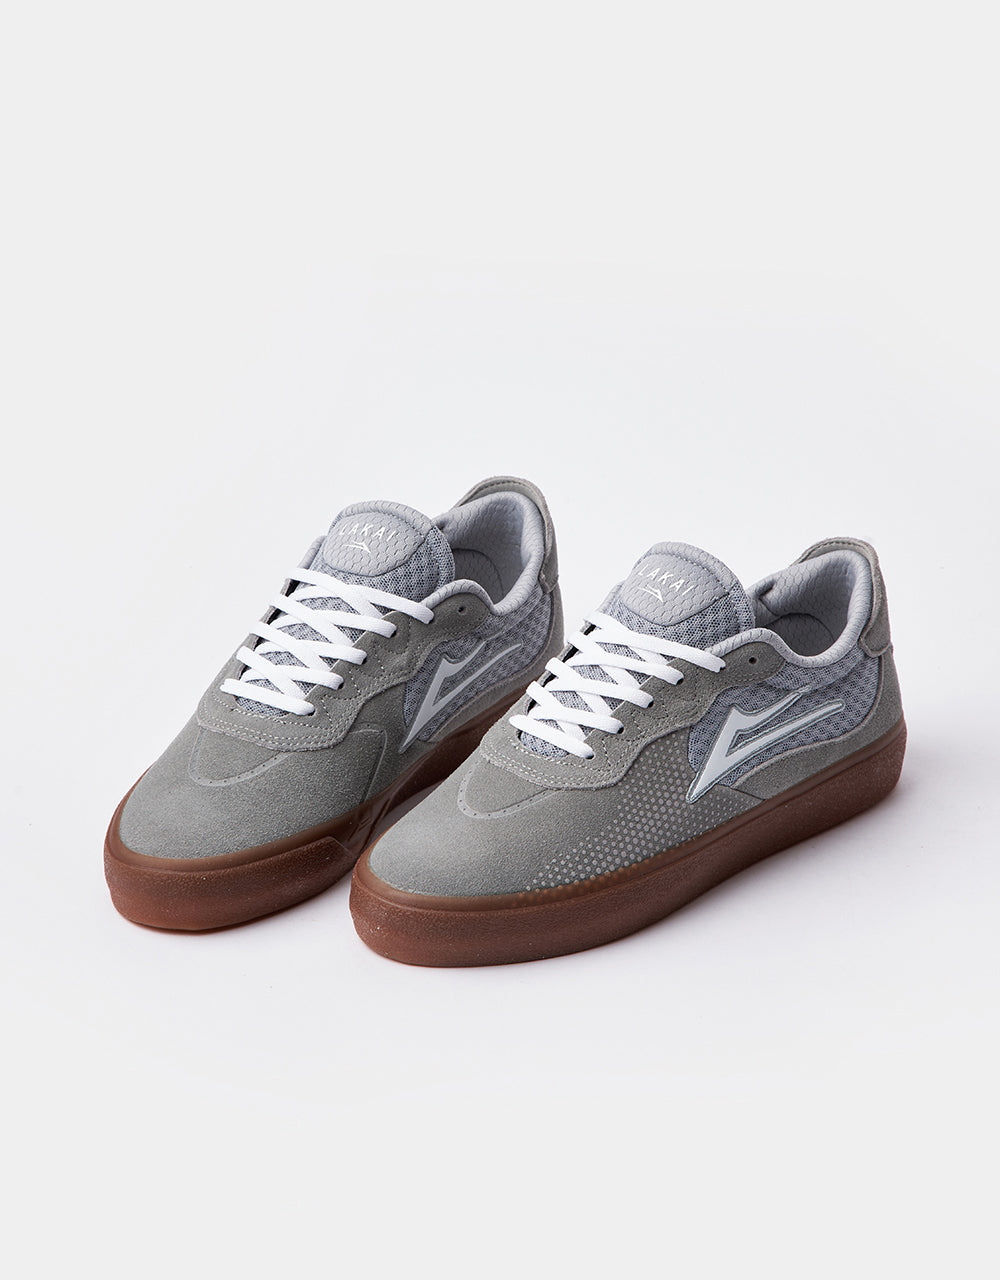 Lakai Essex Skate Shoes - Light Grey/Gum Suede